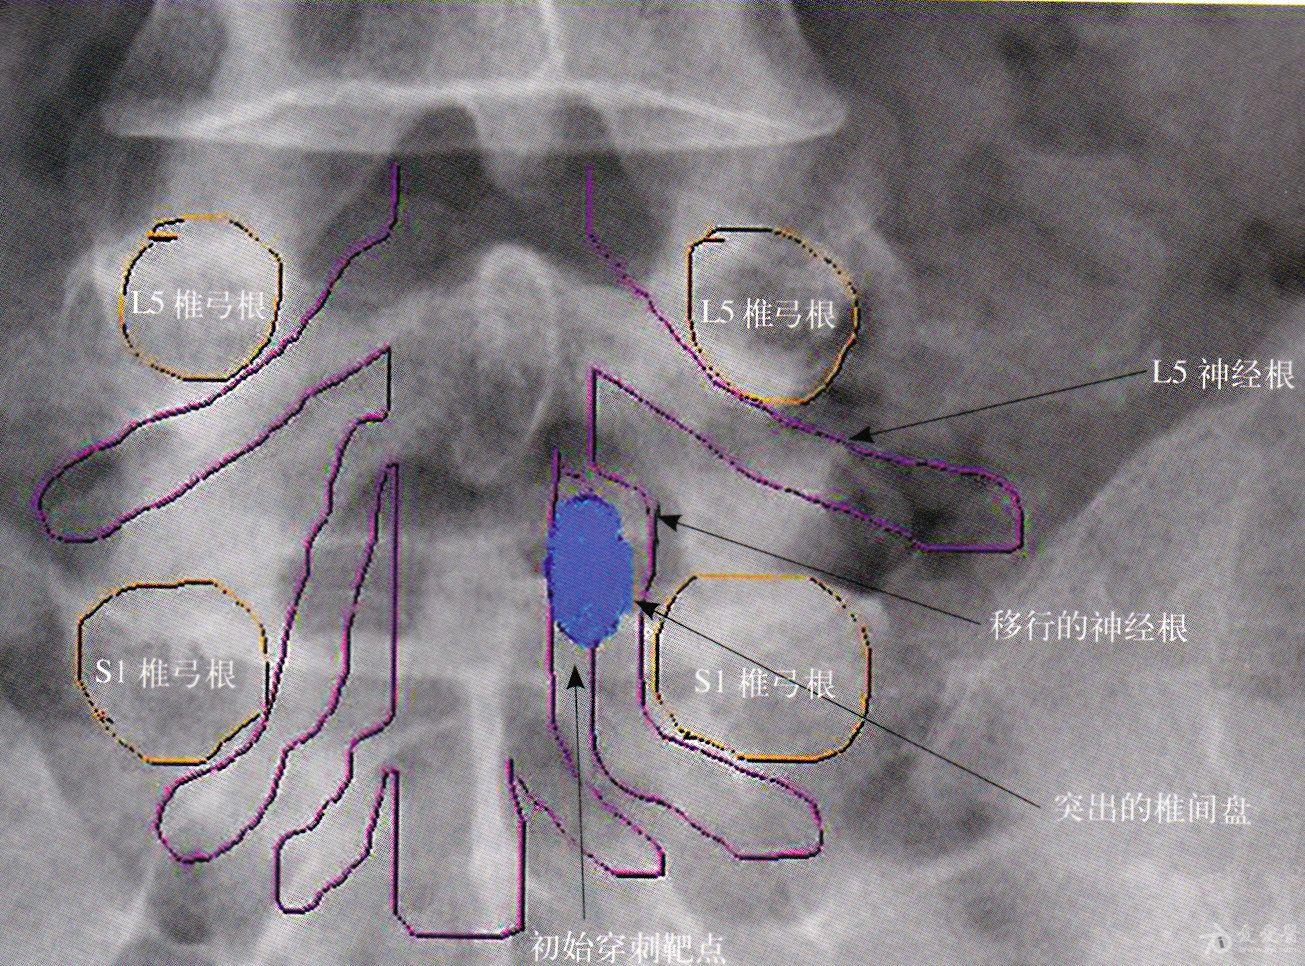 应用脊柱内窥镜经椎板间隙入路治疗腰椎间盘突出症一例报告椎间孔镜l5